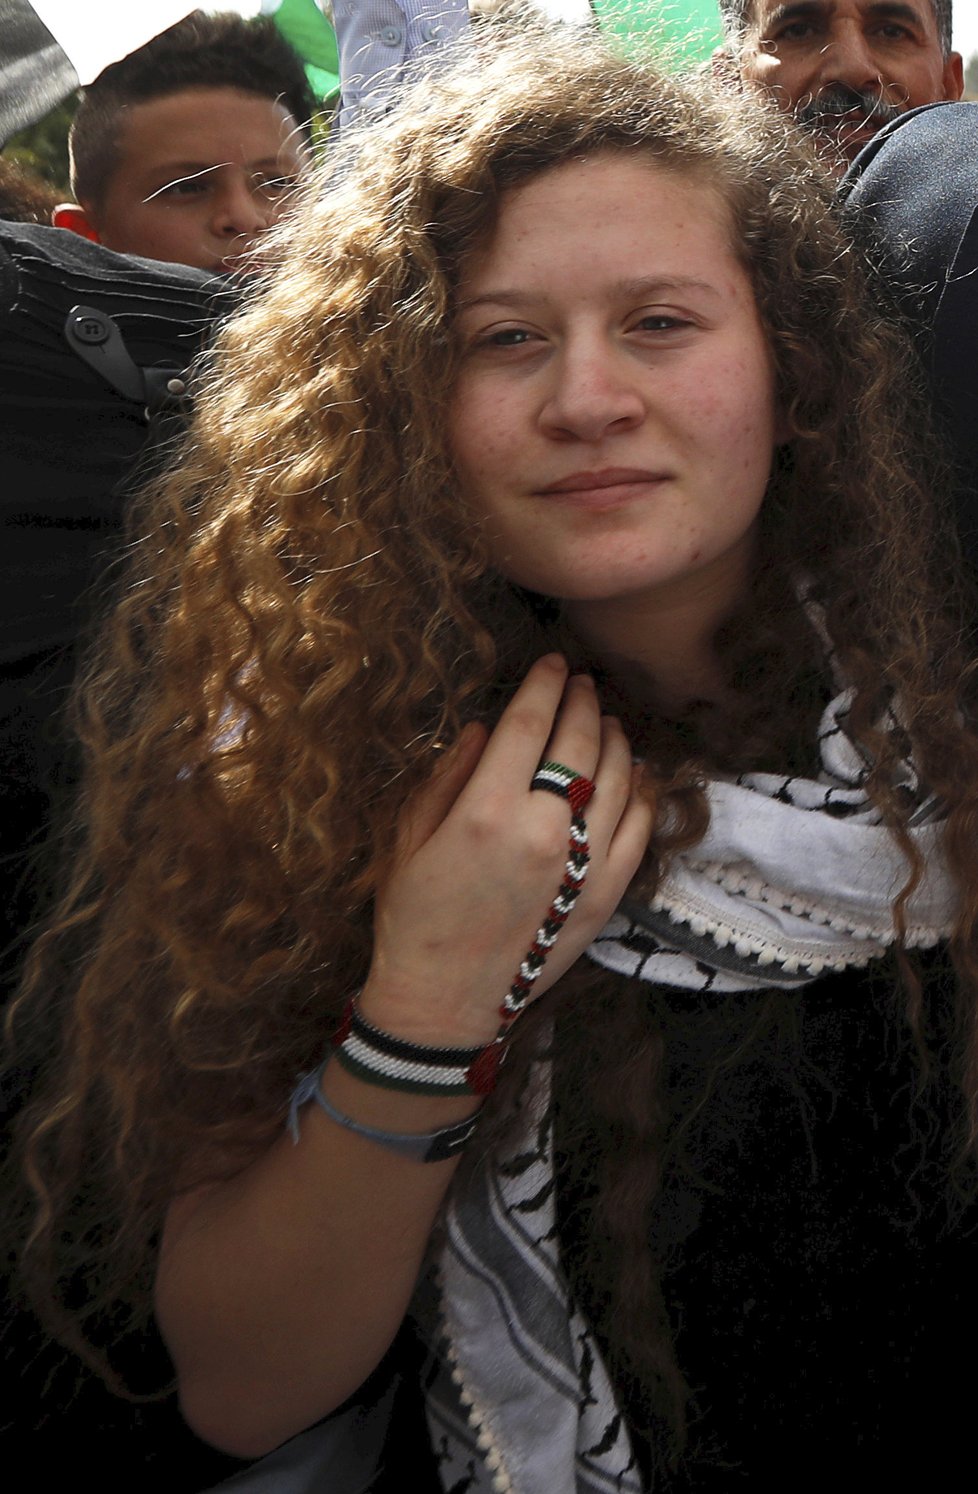 Ahida Tamímíová (17) byla propuštěna z vězení. Pro Palestince se stala hrdinkou